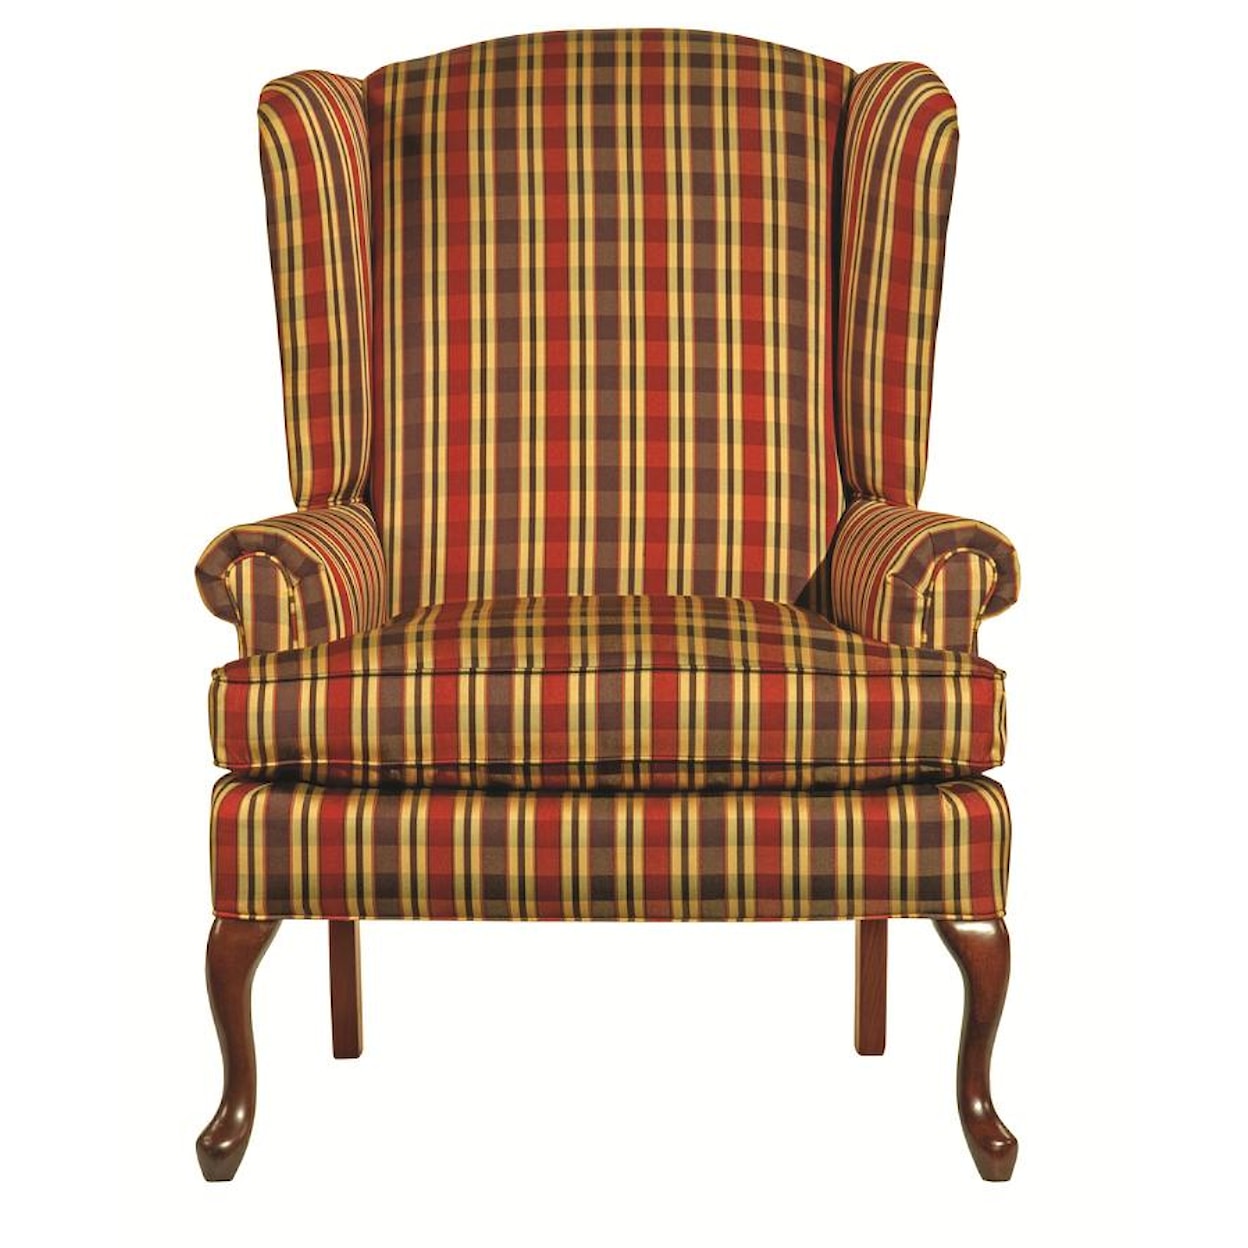 Kincaid Furniture Accent Chairs Camden Chair